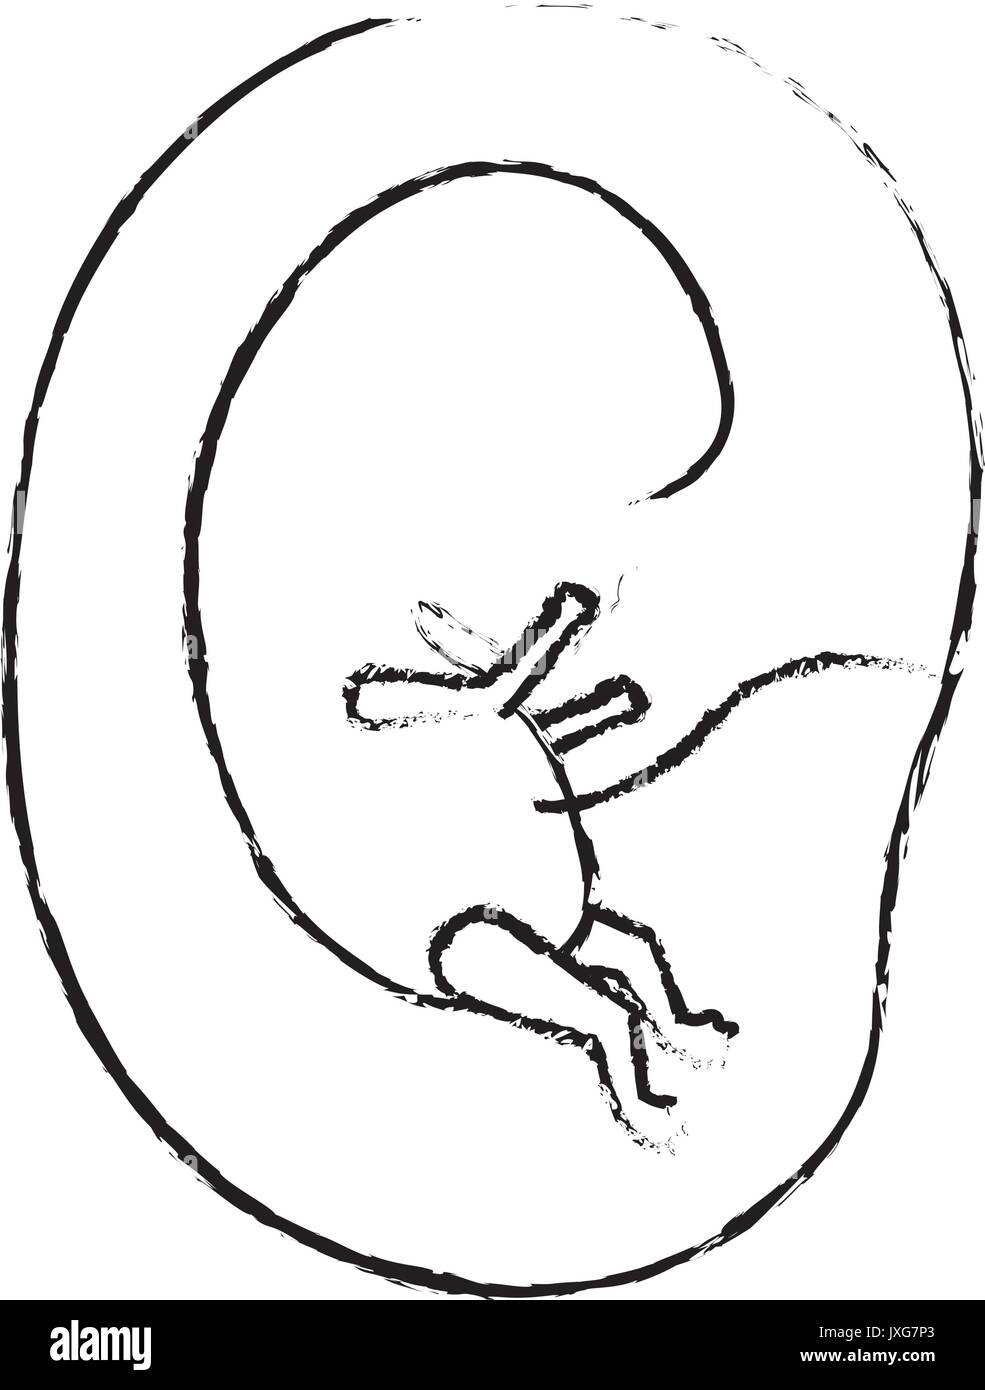 Silhouette floue monochrome vue du côté de la croissance du fœtus dans le placenta Illustration de Vecteur